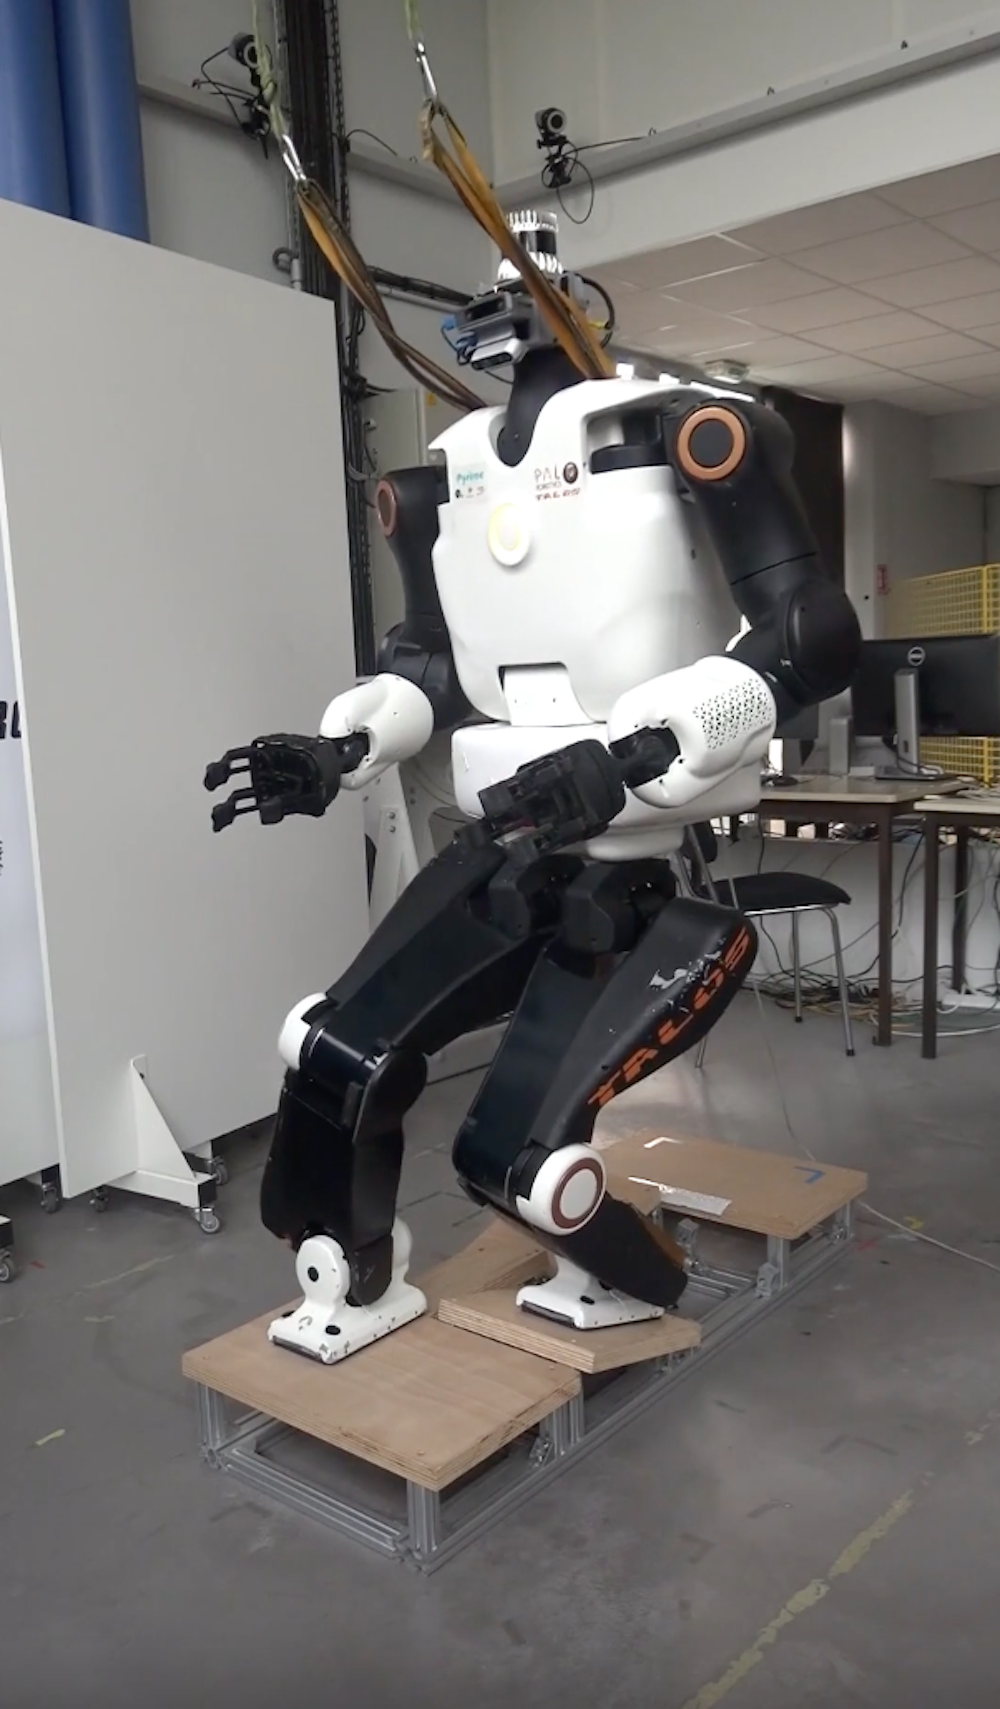 Un robot qui reproduit les mouvements, comment est-ce possible ?